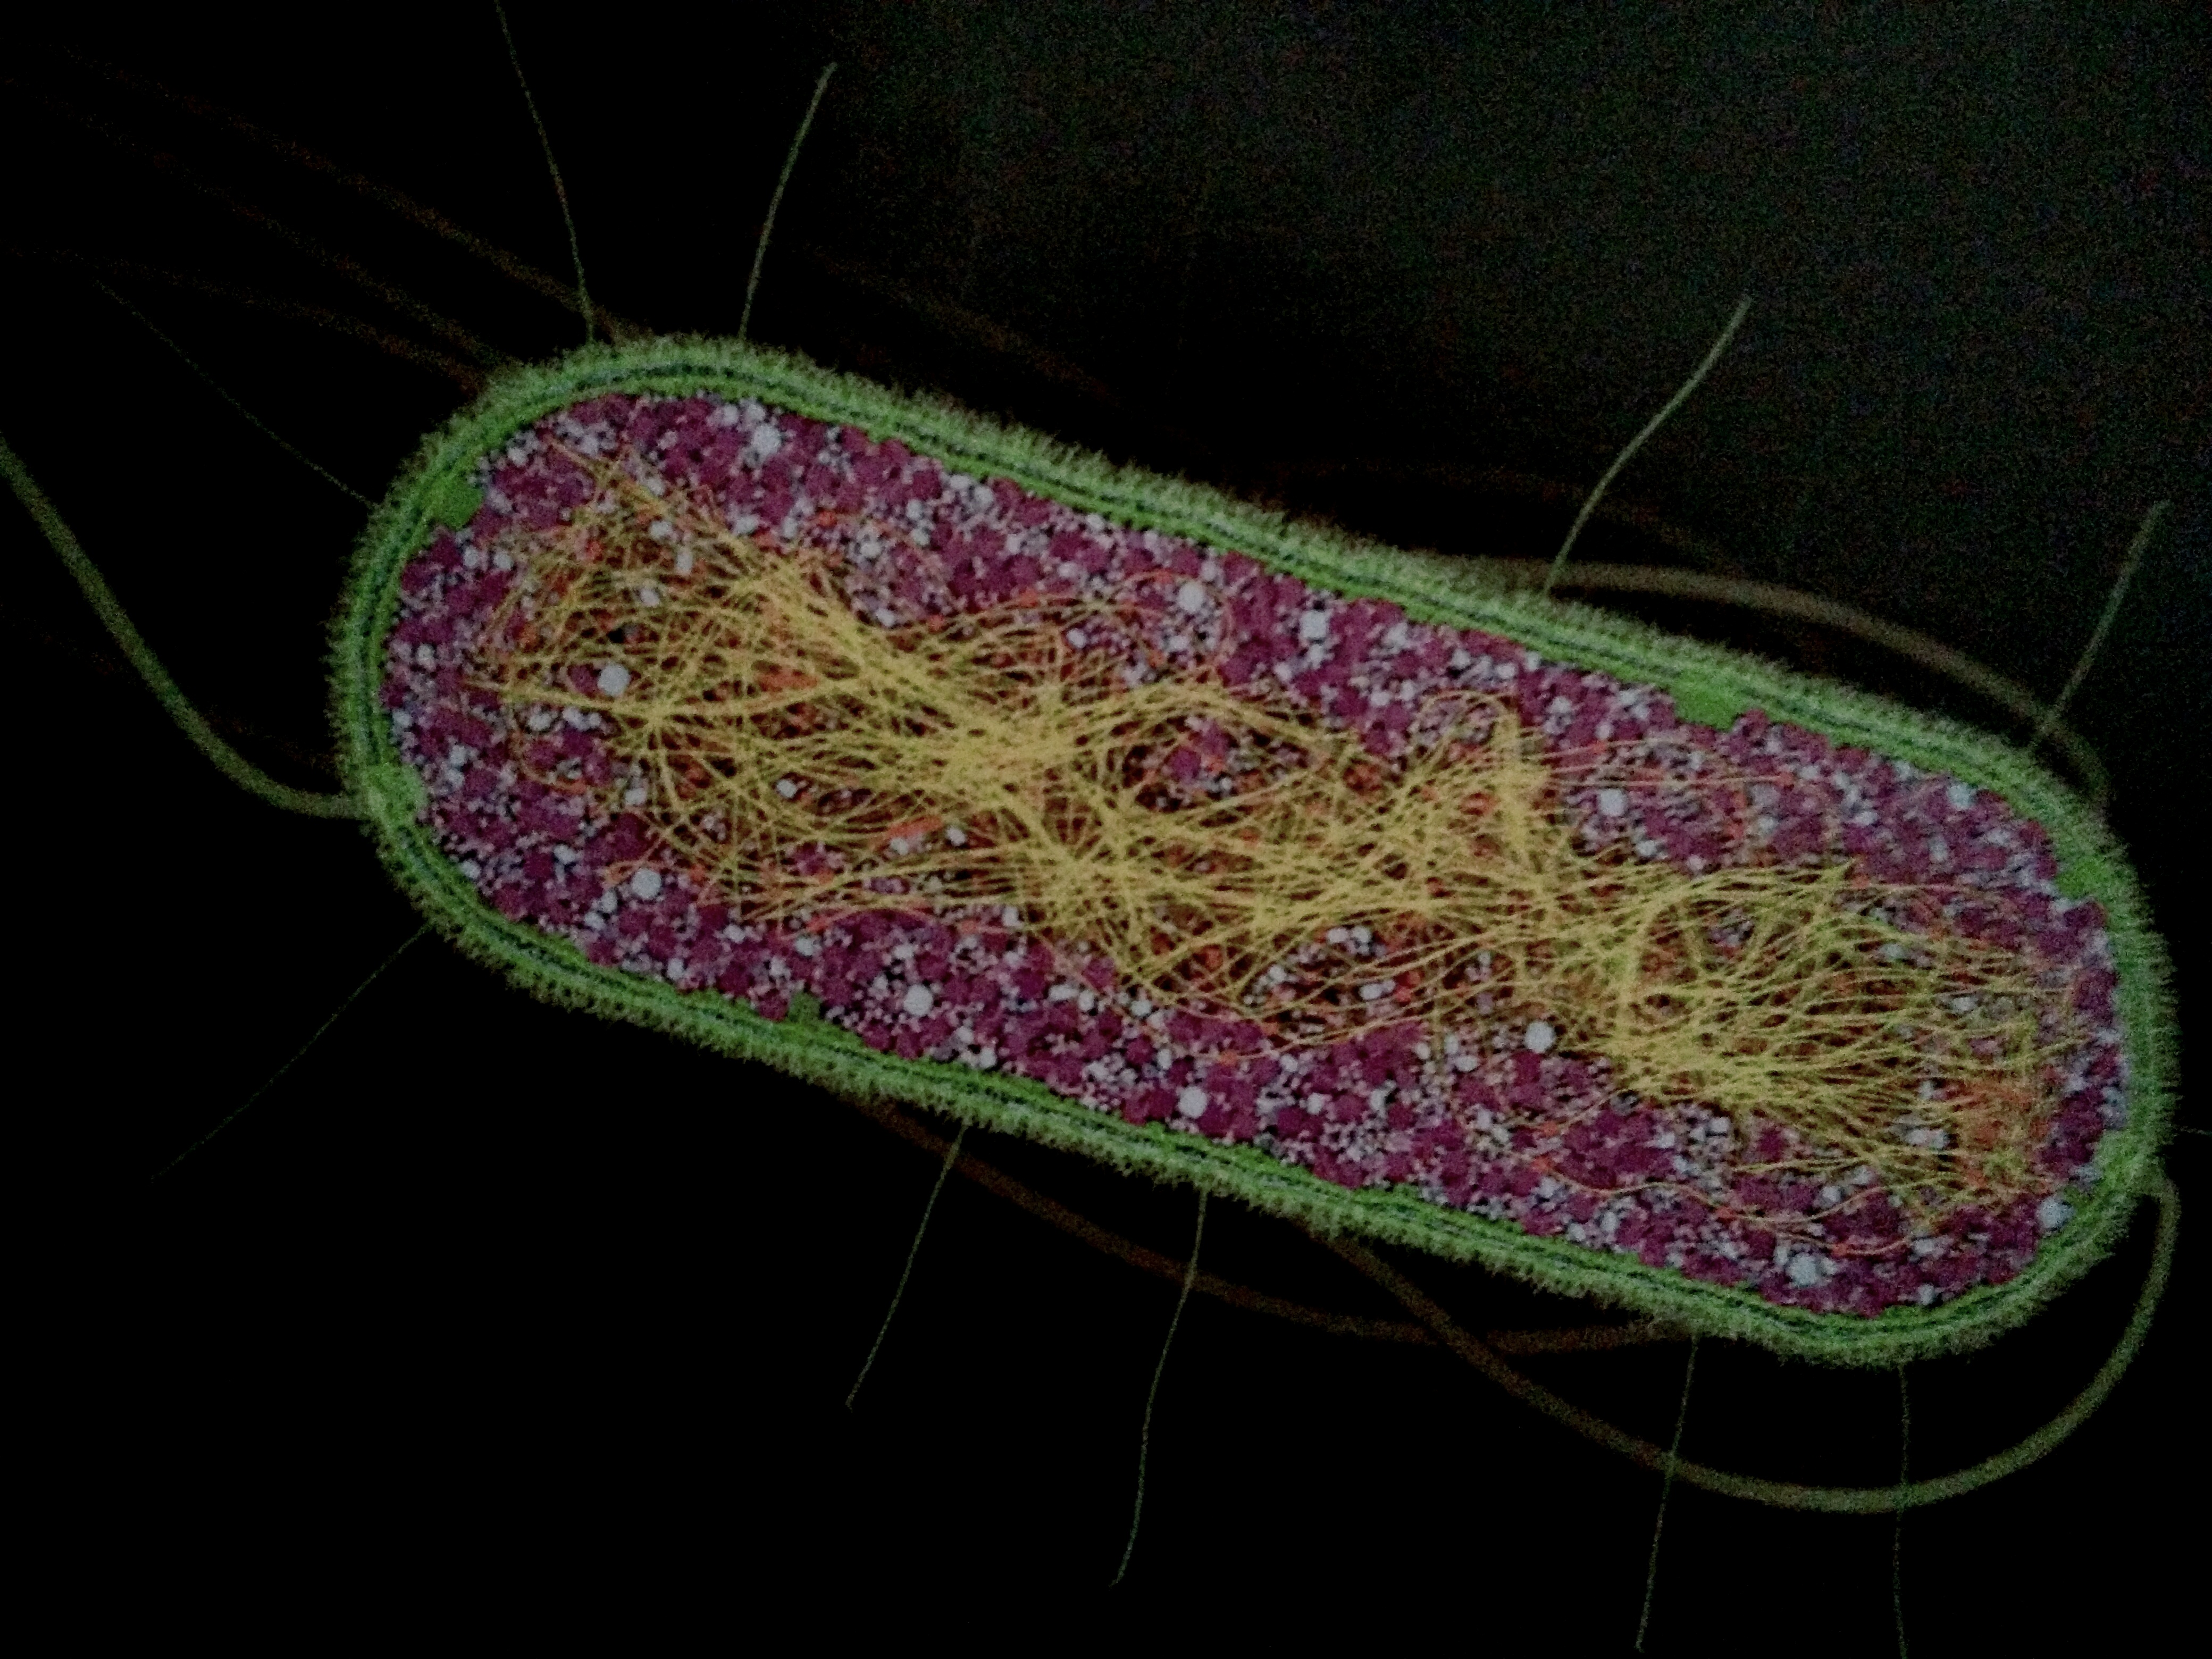 大腸桿菌放大7萬倍，菌株具有周生鞭毛而能運動